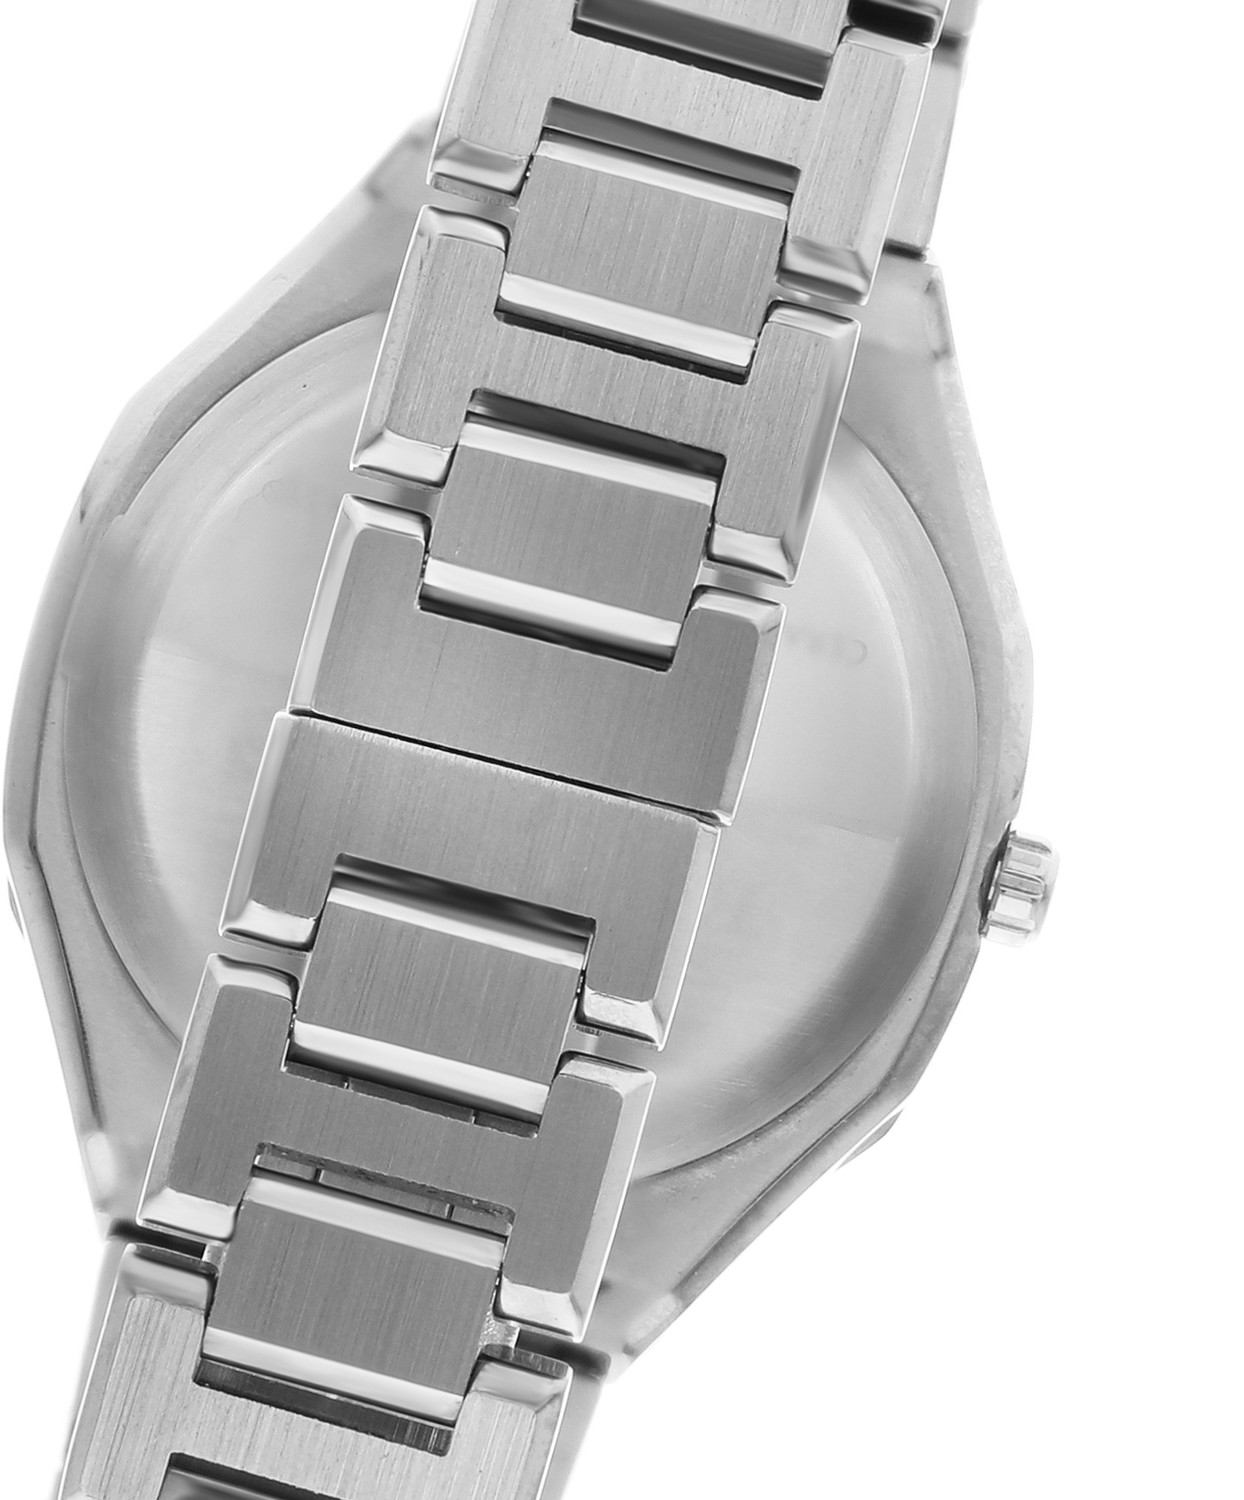 BEVERLY HILLS POLO CLUB  Женские часы, кварцевый механизм, сталь, 34 мм